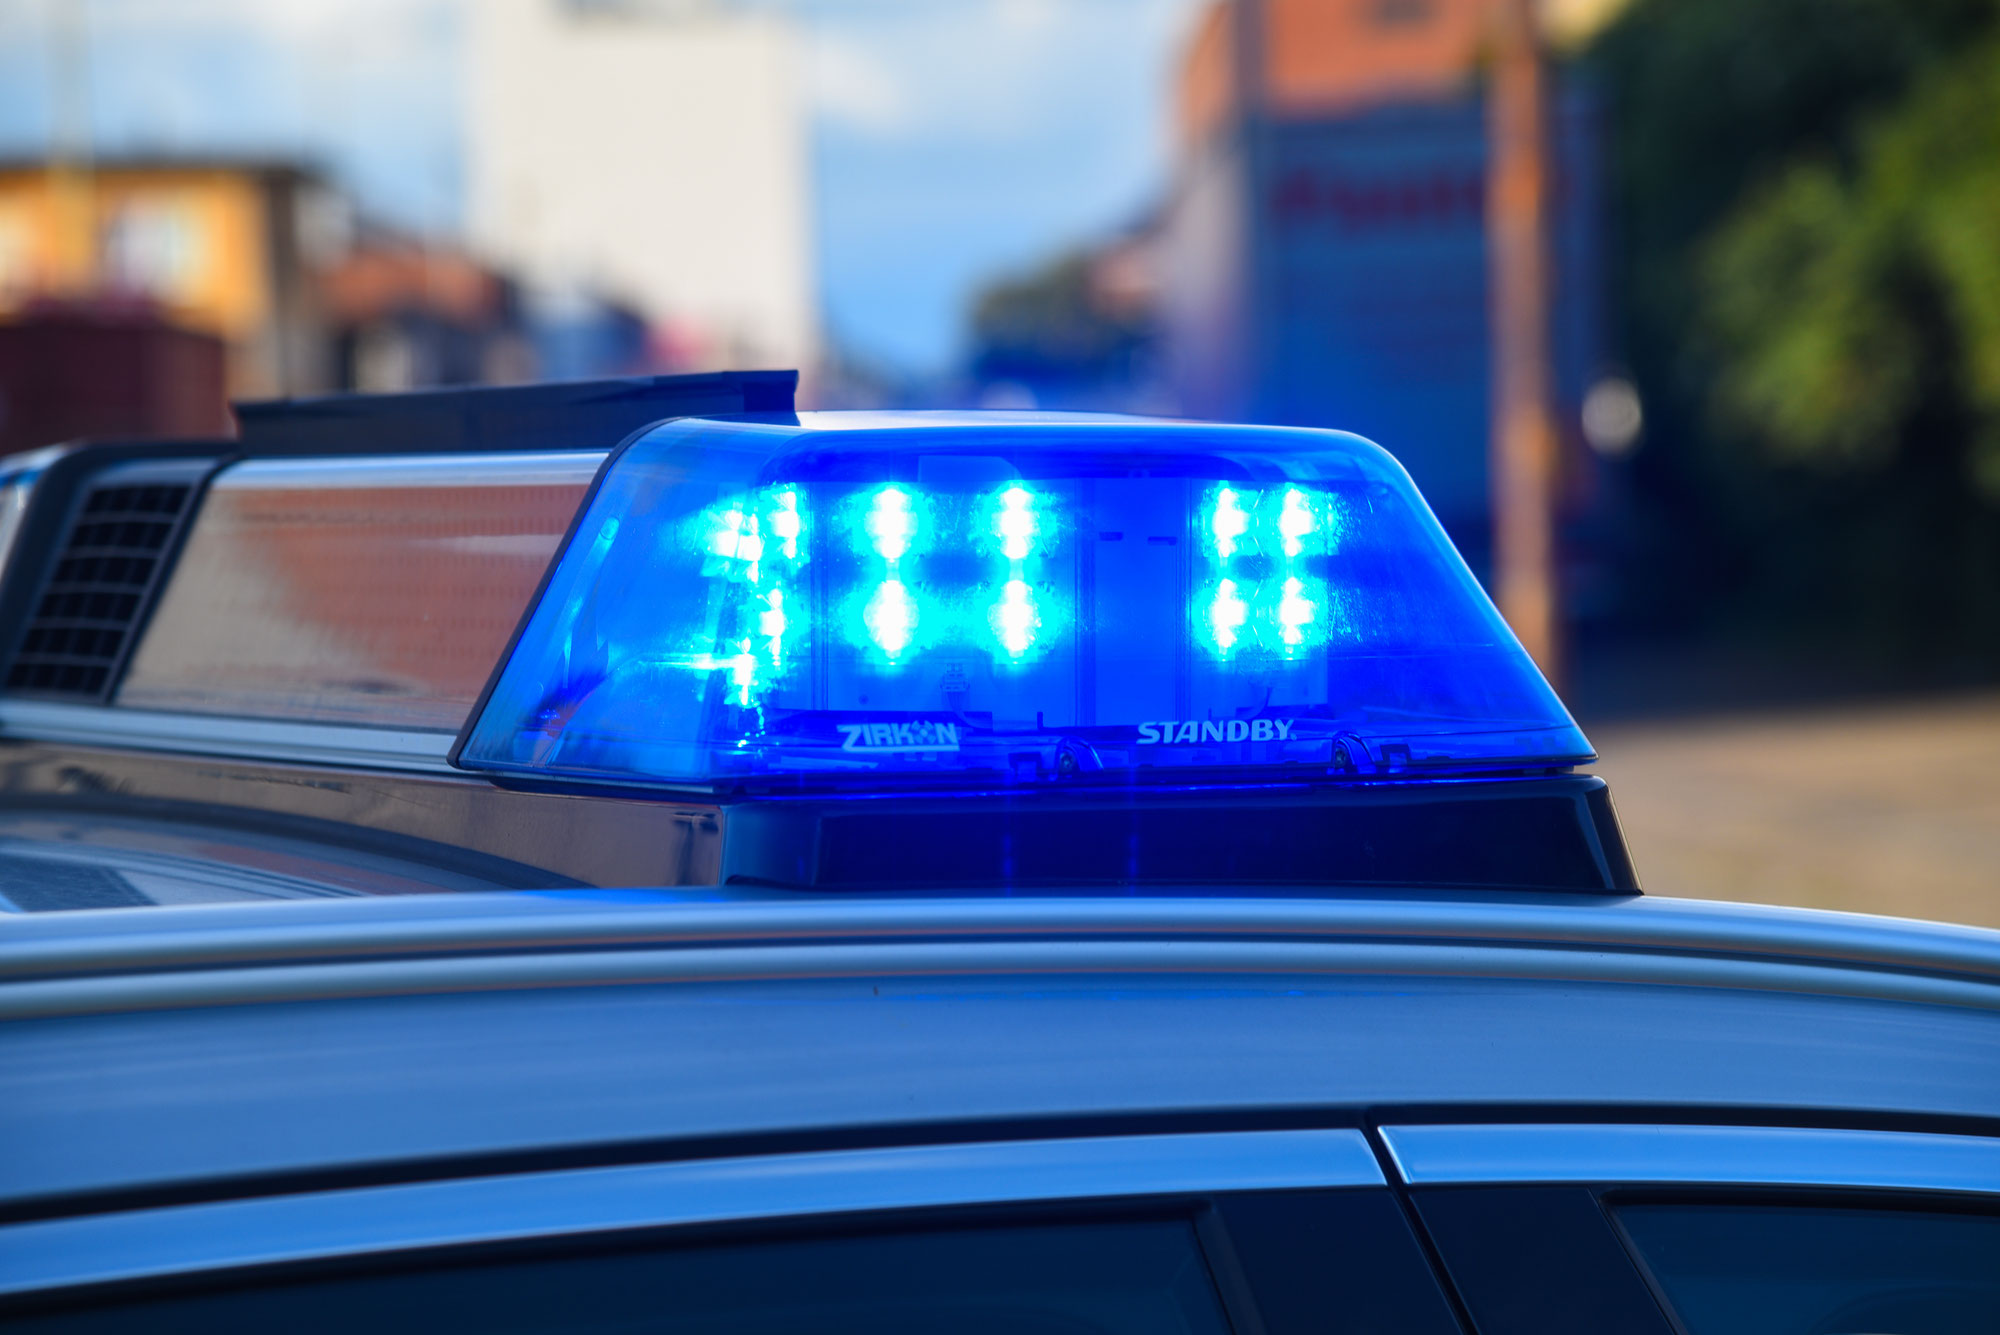 Karlsruhe: Unfall am Oststadtkreisel - Polizei sucht Zeugen